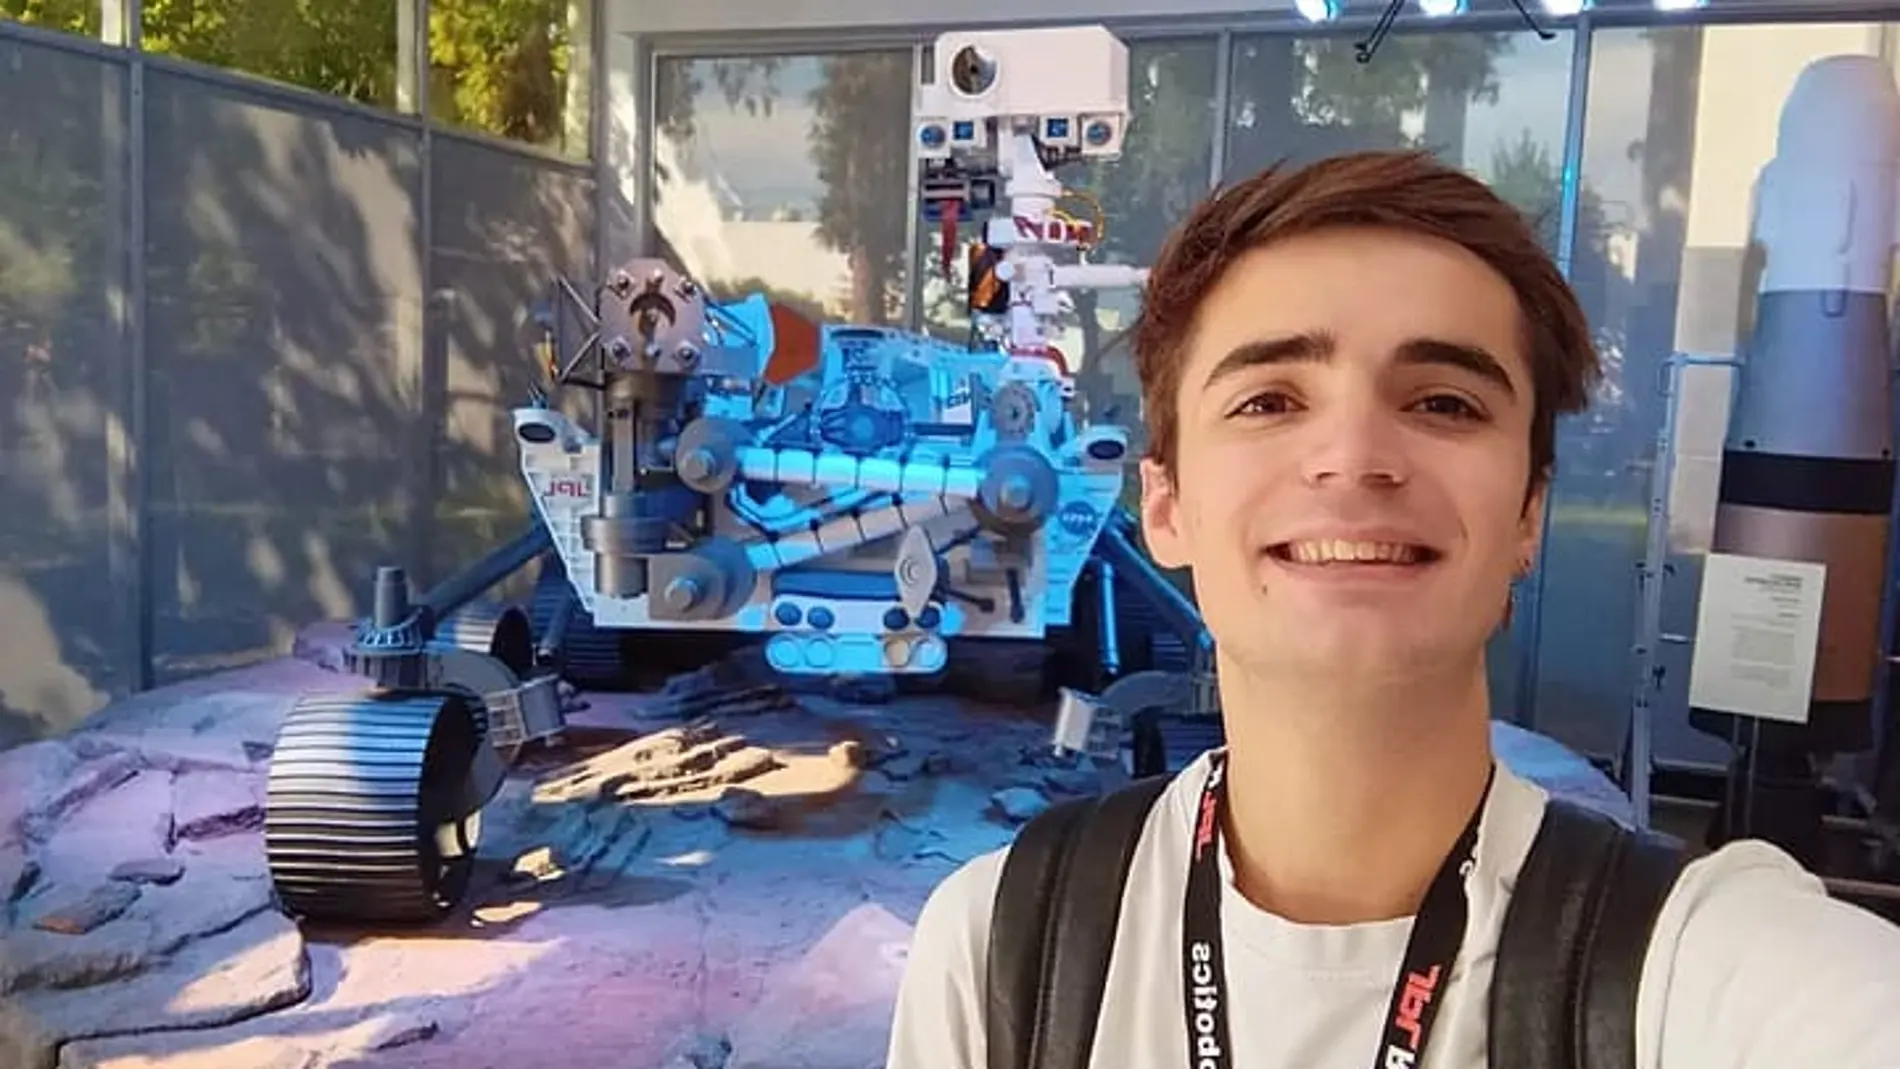 La NASA ficha a un joven de 22 años de Linares